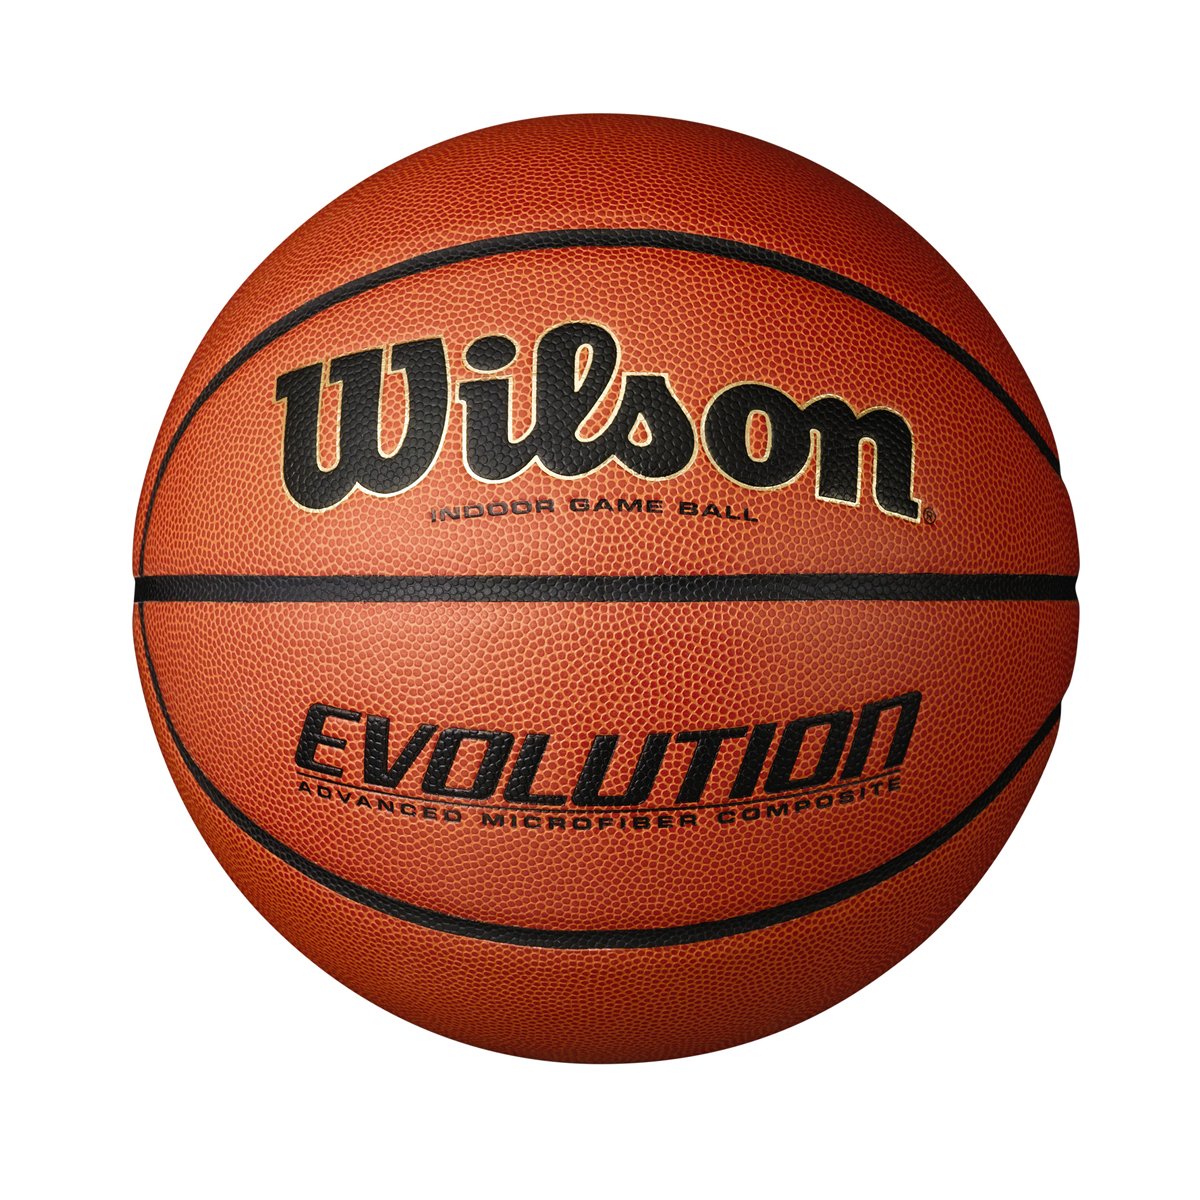 фото Баскетбольный мяч wilson evolution bskt sz7 emea 7 orange